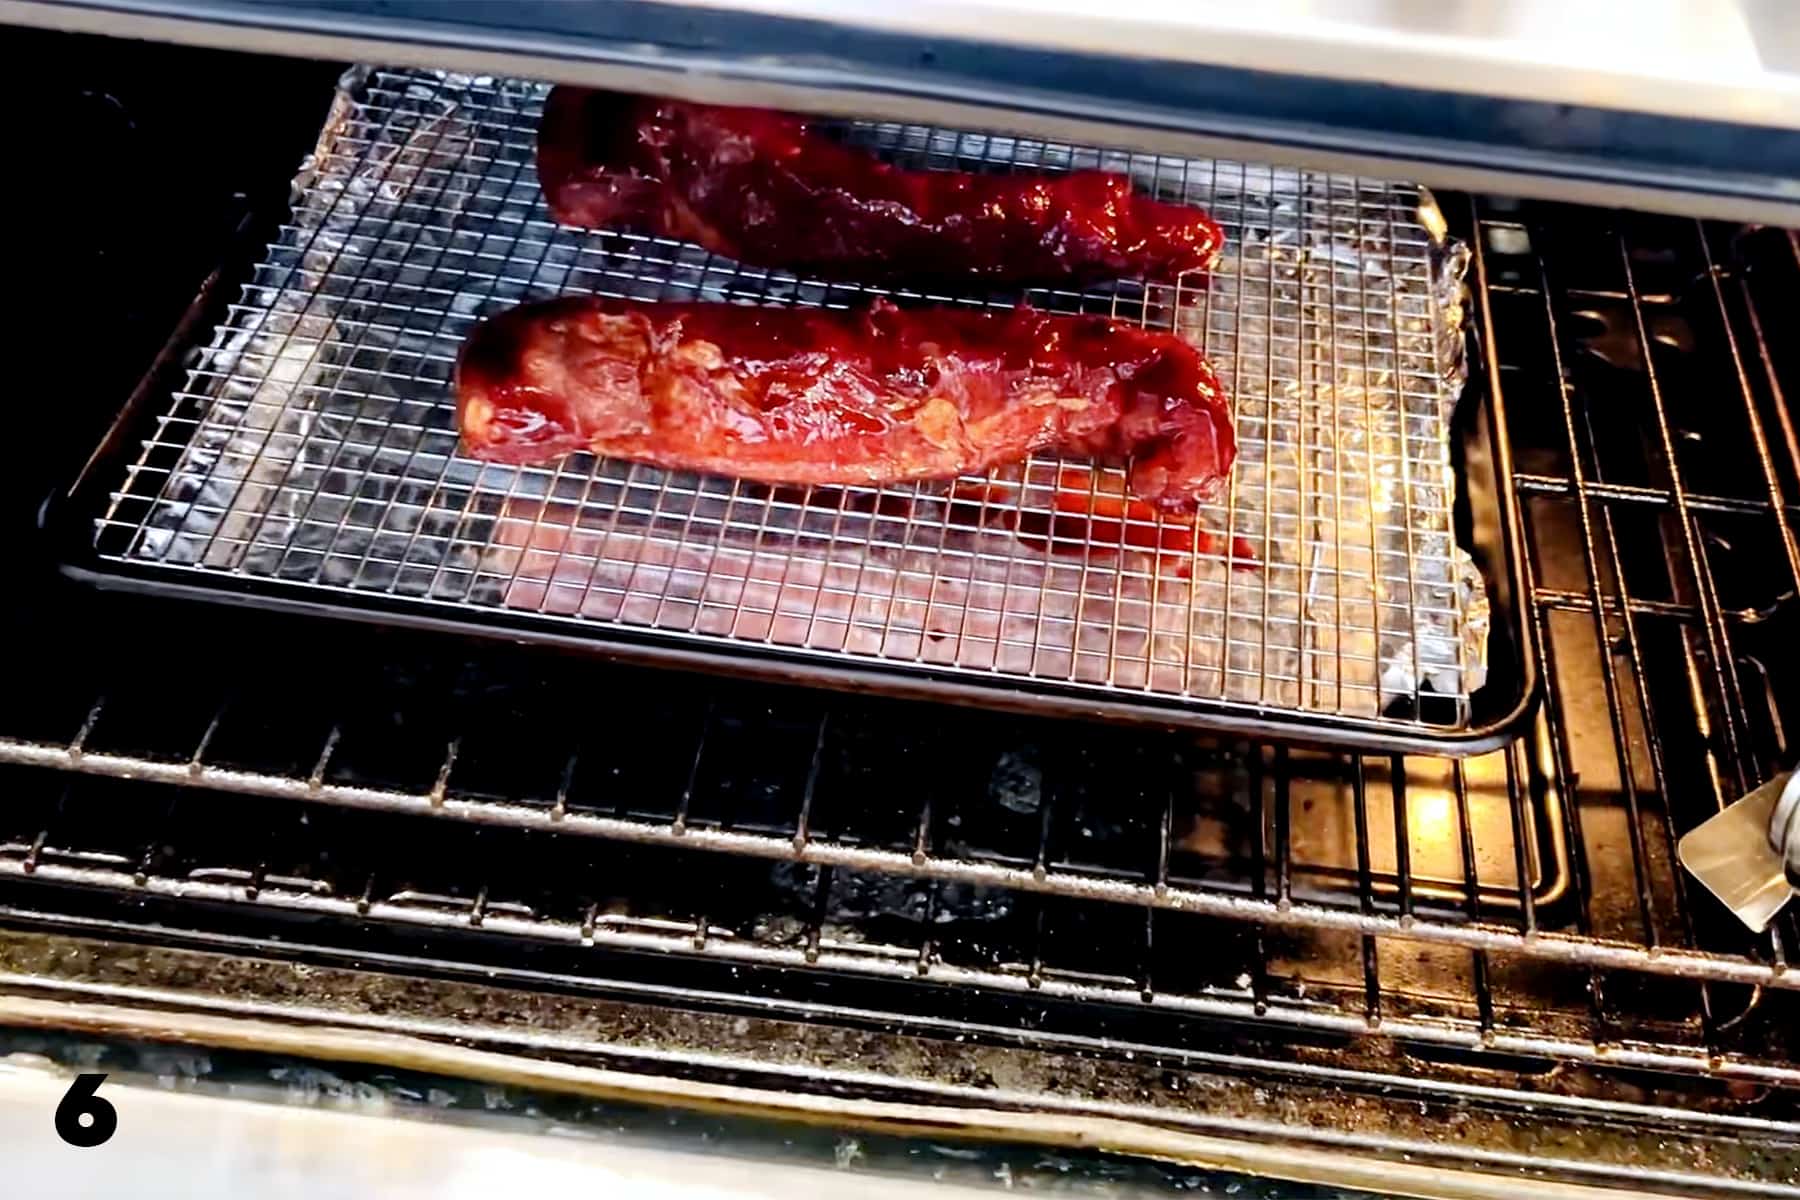 pork tenderloins on baking sheet in oven